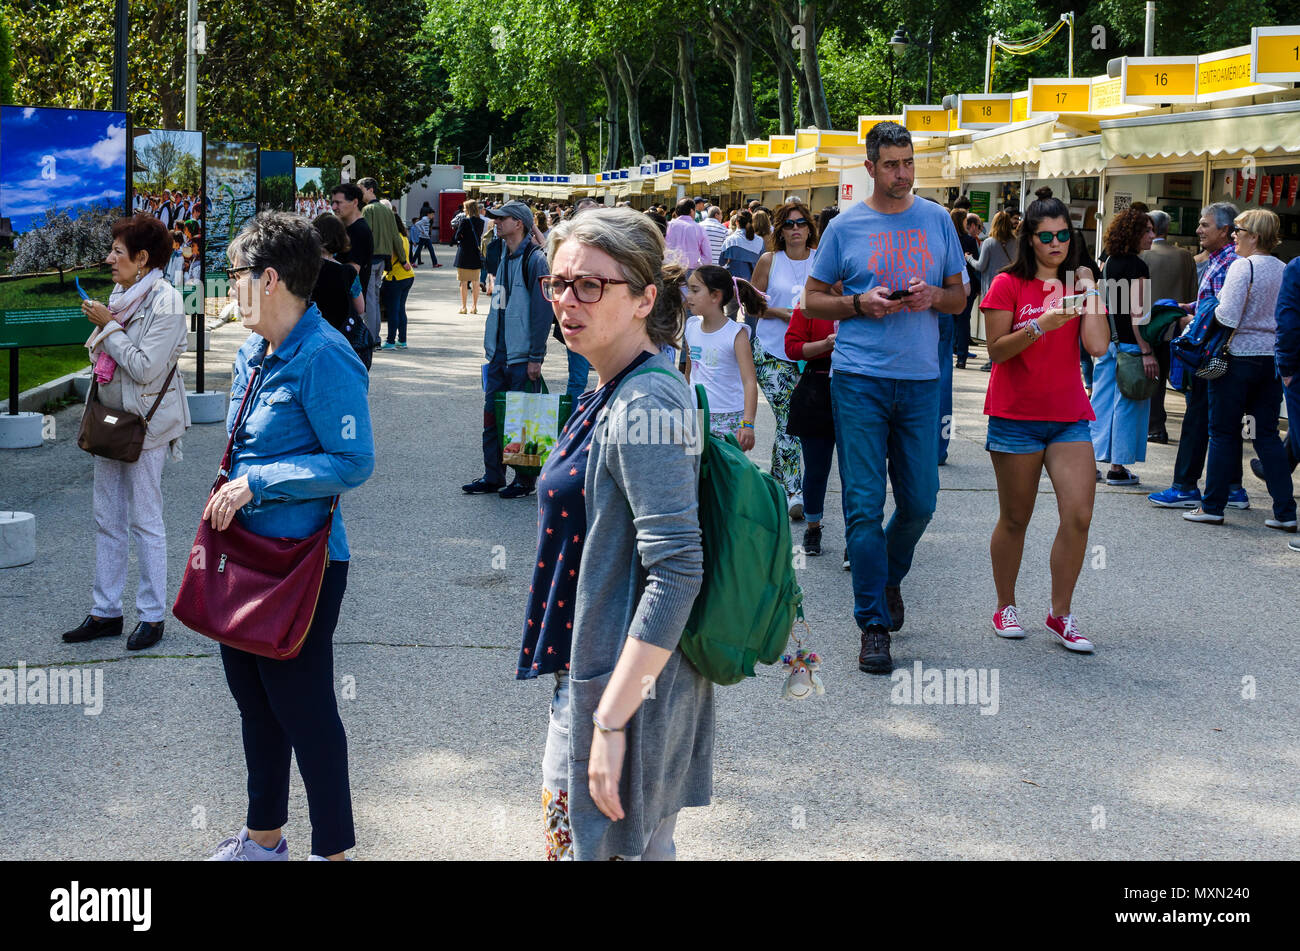 La vista de la gente en la Feria del Libro 2018, Madrid, España. Foto de stock